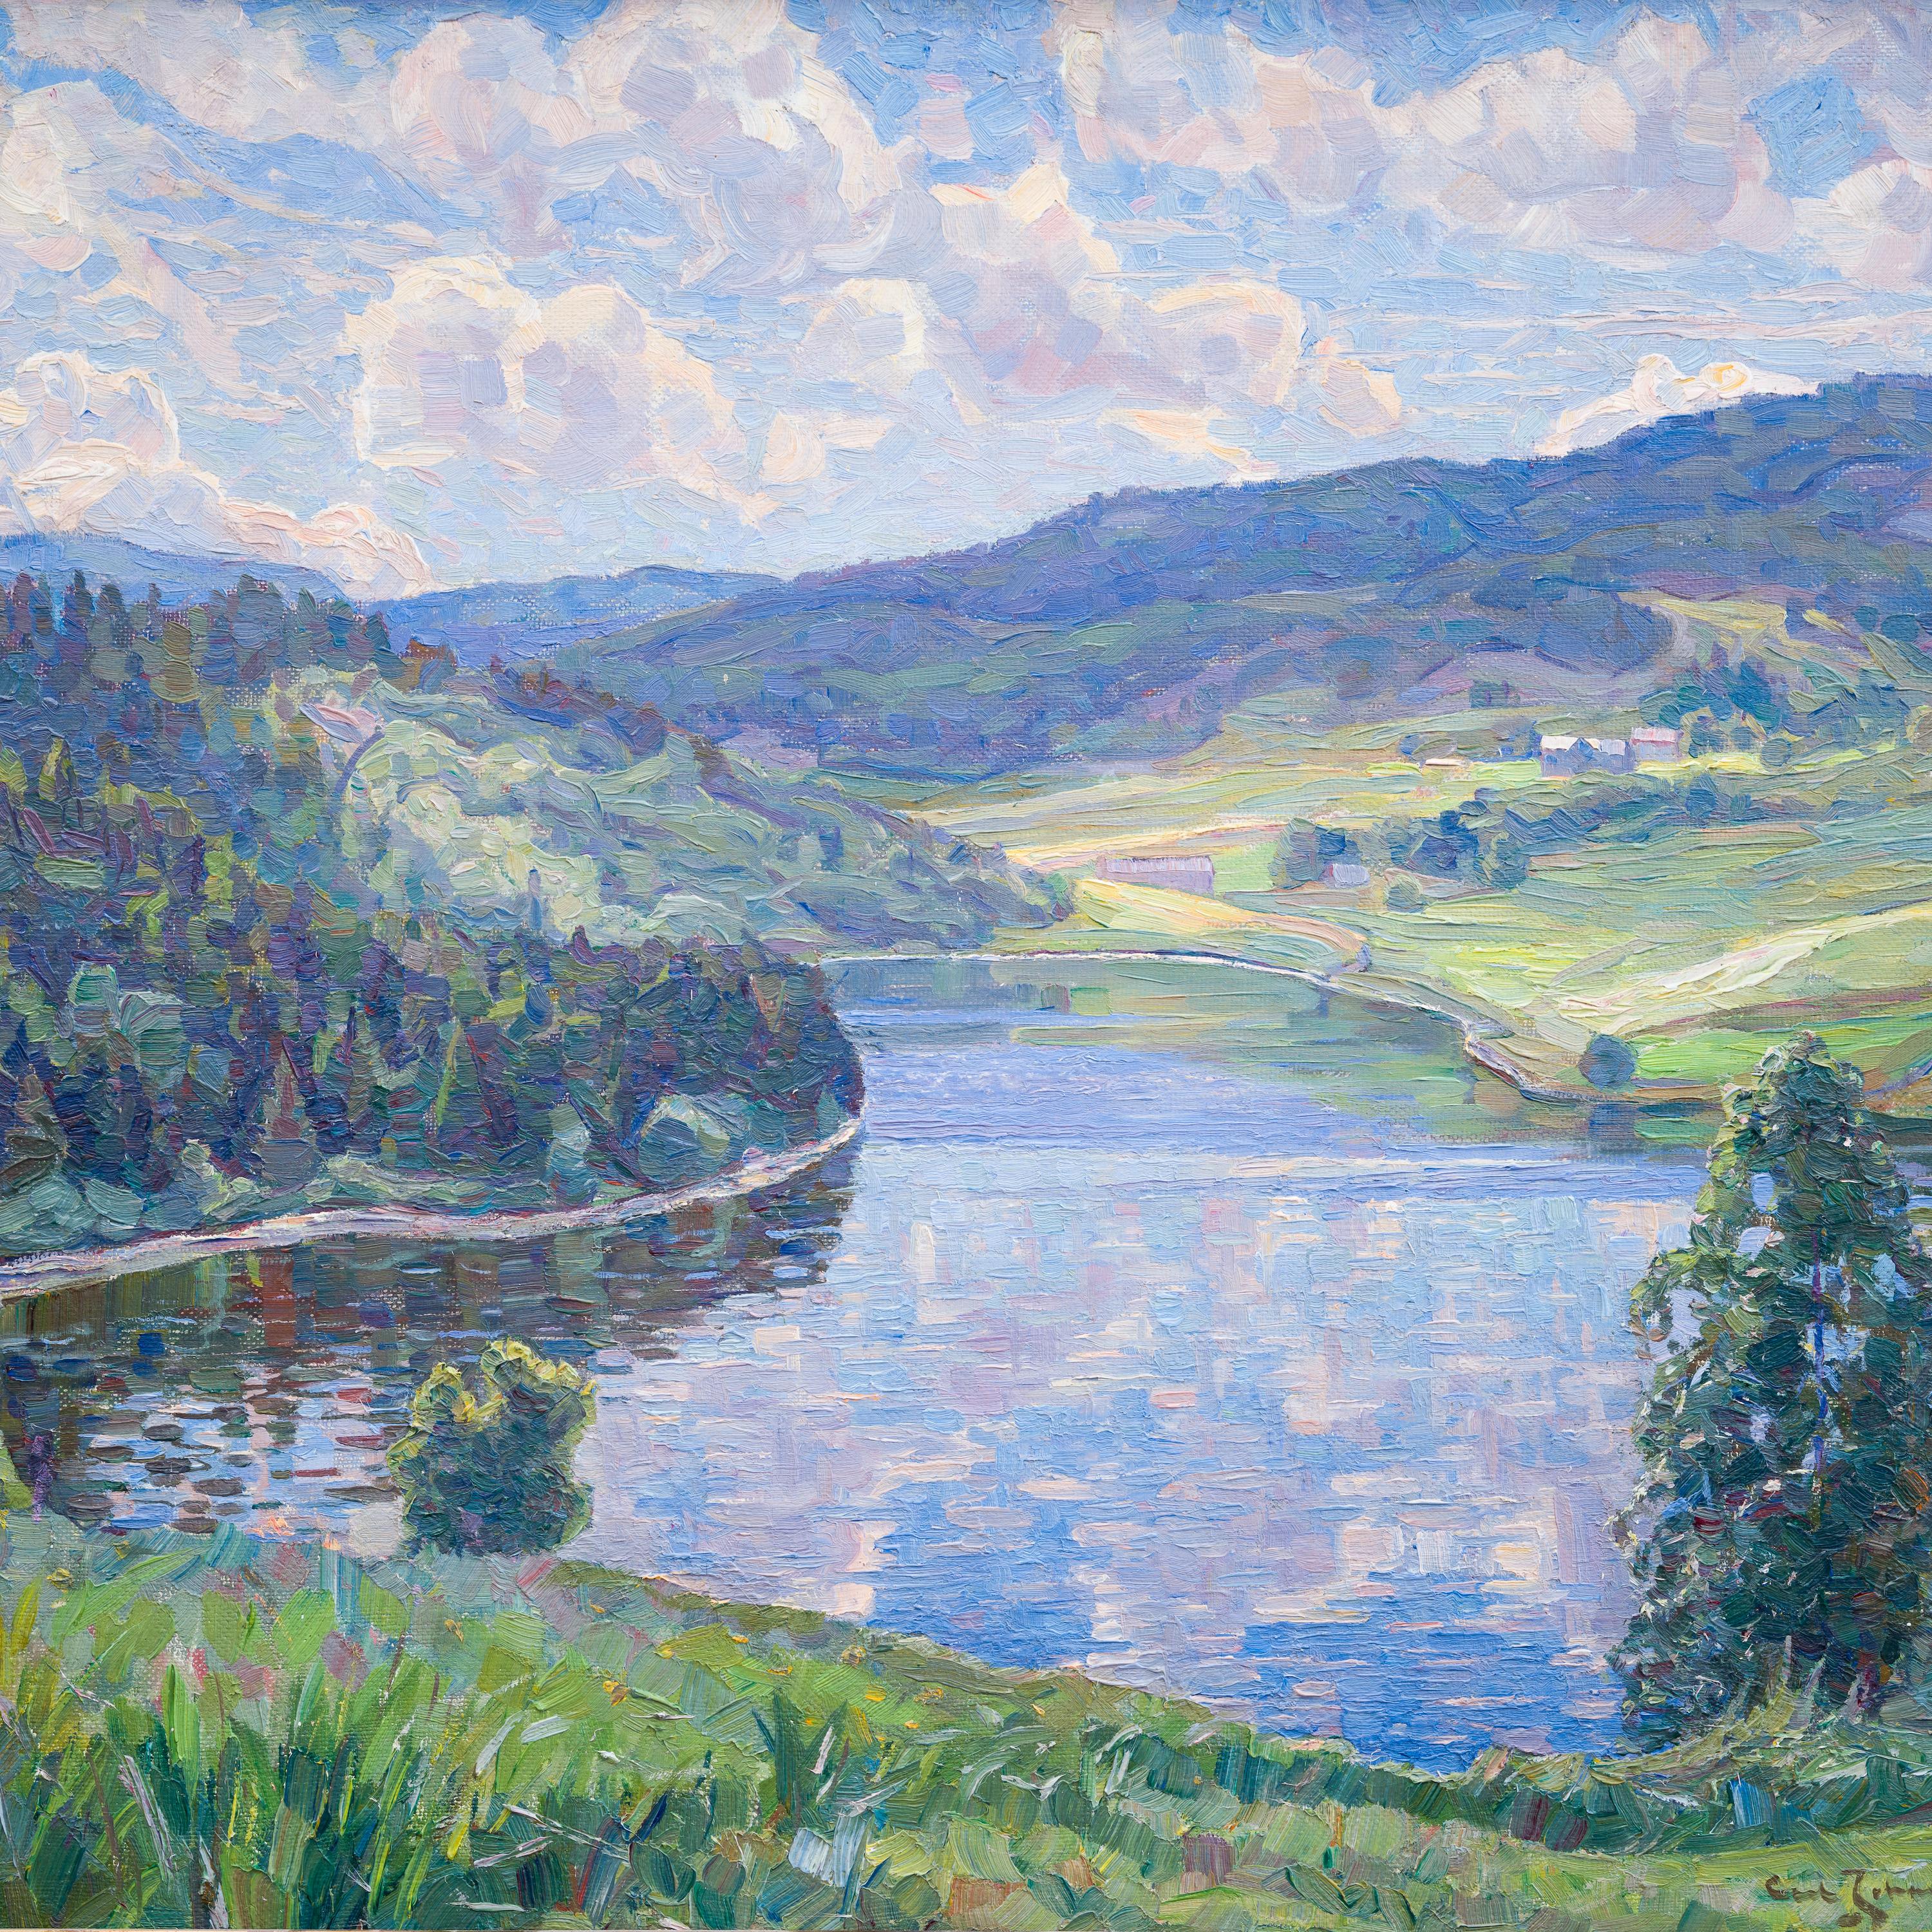 Landschaft aus Nordingrå, 1935 von Ultramarine Johansson (Post-Impressionismus), Painting, von Carl Johansson 